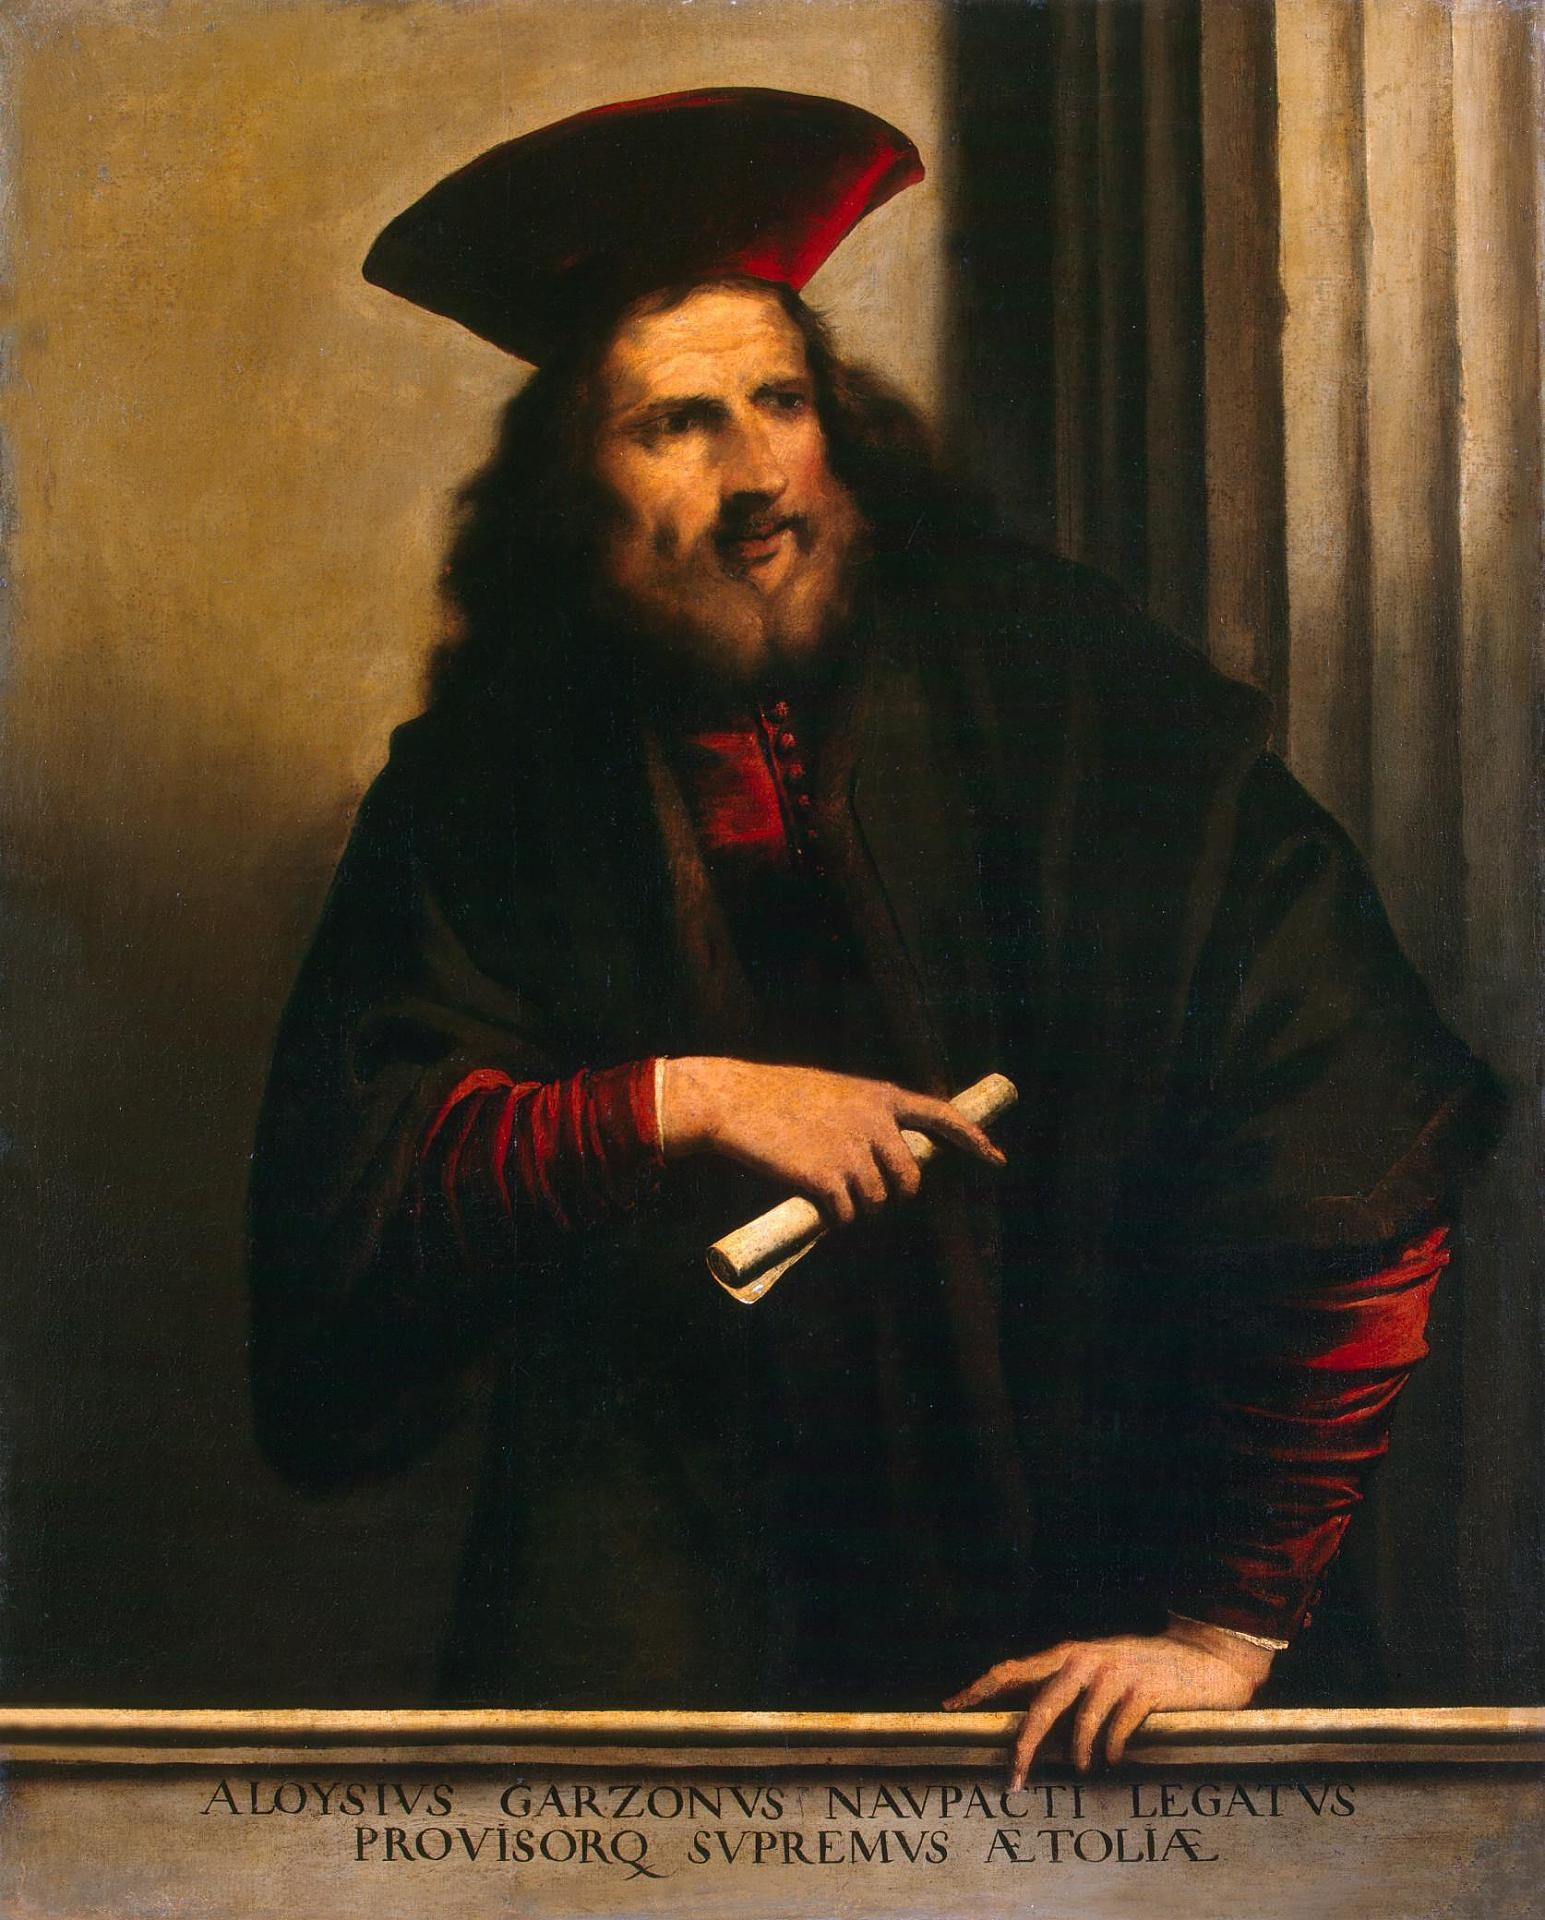 Ritratto di Alvise Garzoni/Pietro della Vecchia